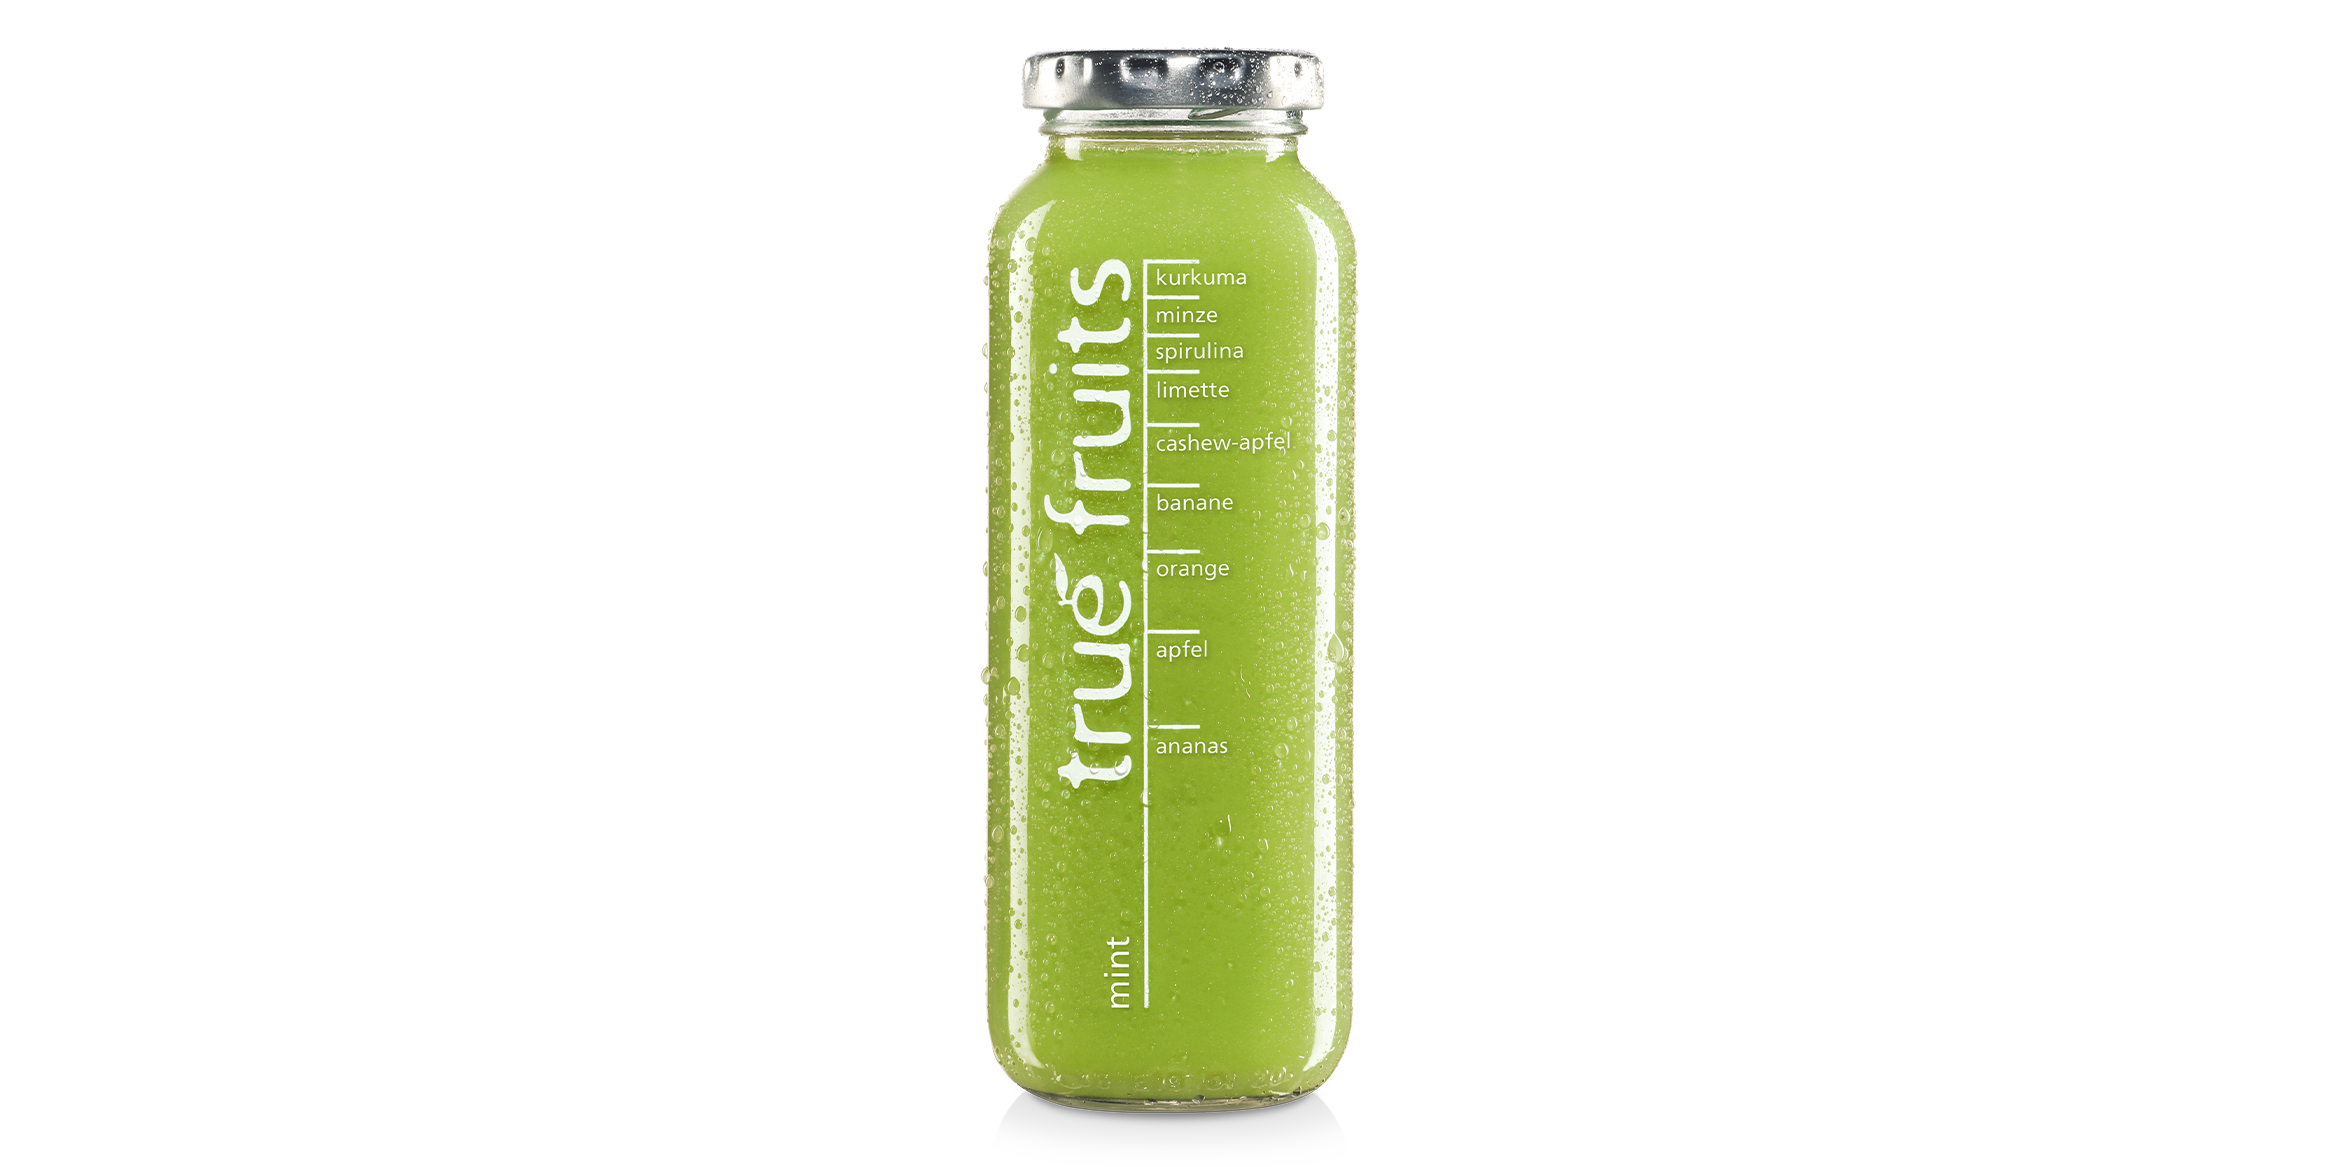 A partir de ahora, ¡tendrás una visión clara! Porque nuestro Smoothie mint dice adiós a su aburrido diseño de botella y ahora brilla con un verde intenso en la botella de cristal transparente. #mintblowing